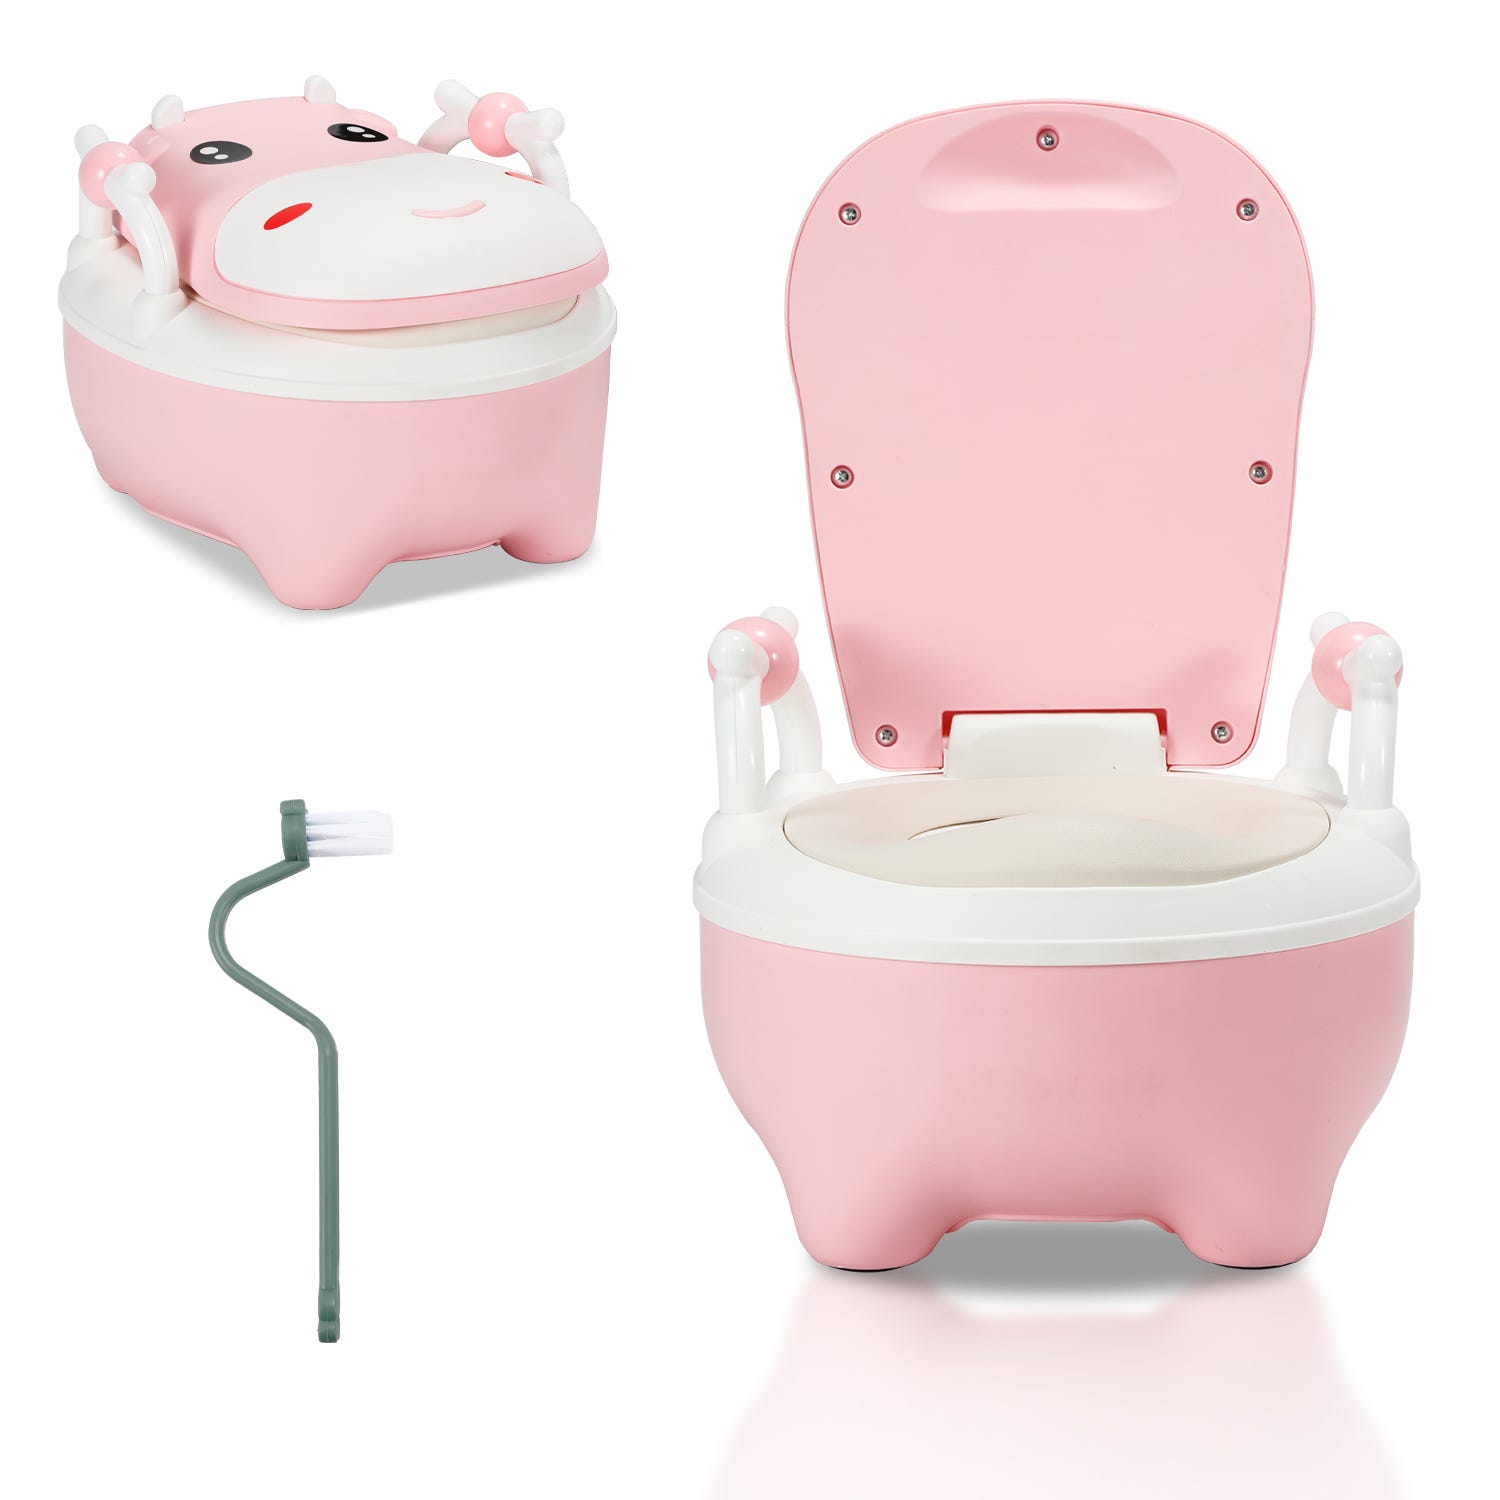 Pot pour enfant, toilette pour enfant, siège de toilette pour enfant avec  poignées et fonction antidérapante Rose